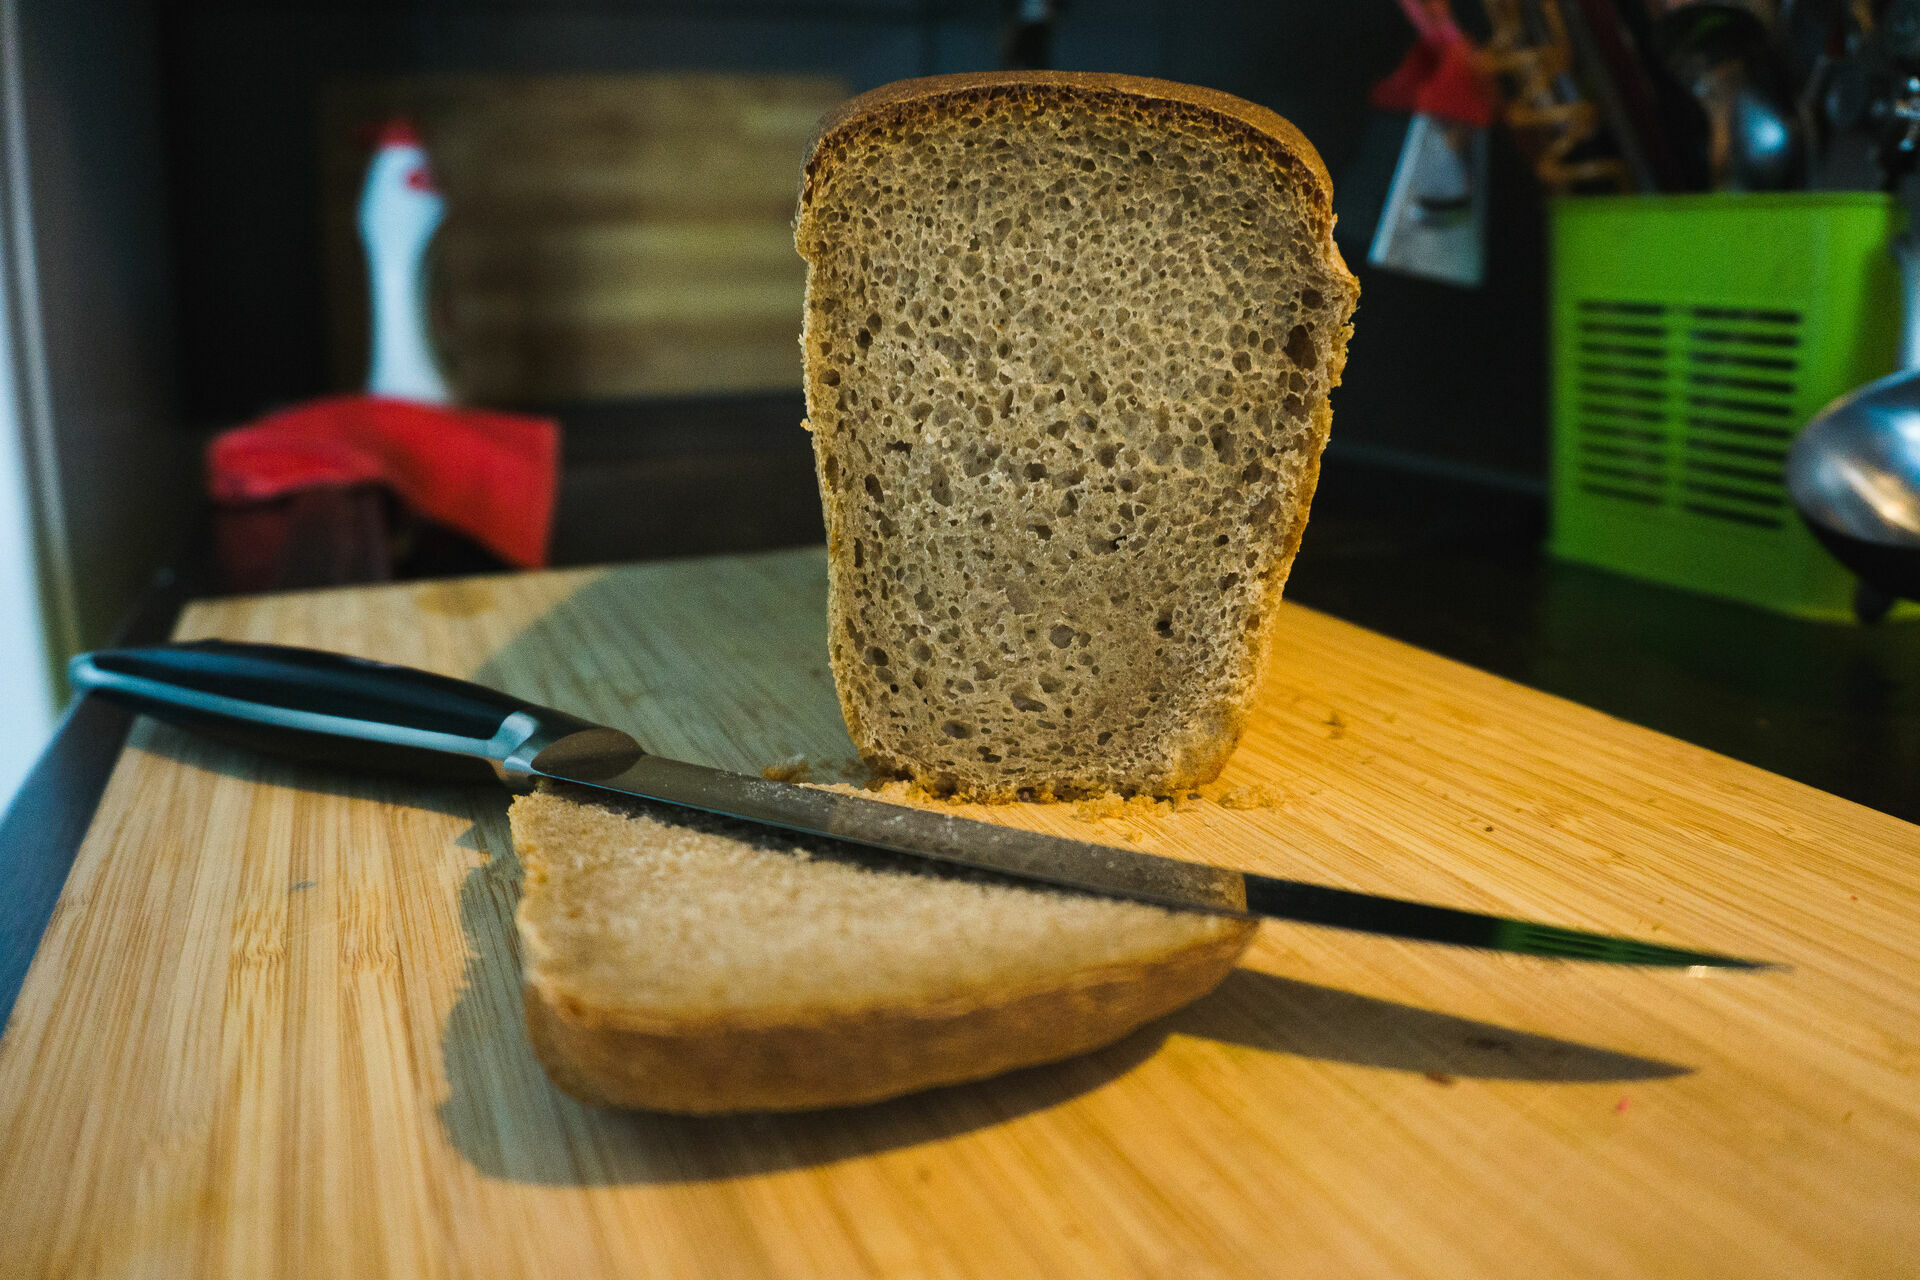 Новый иск о банкротстве «Городецкого хлеба» поступил в арбитраж